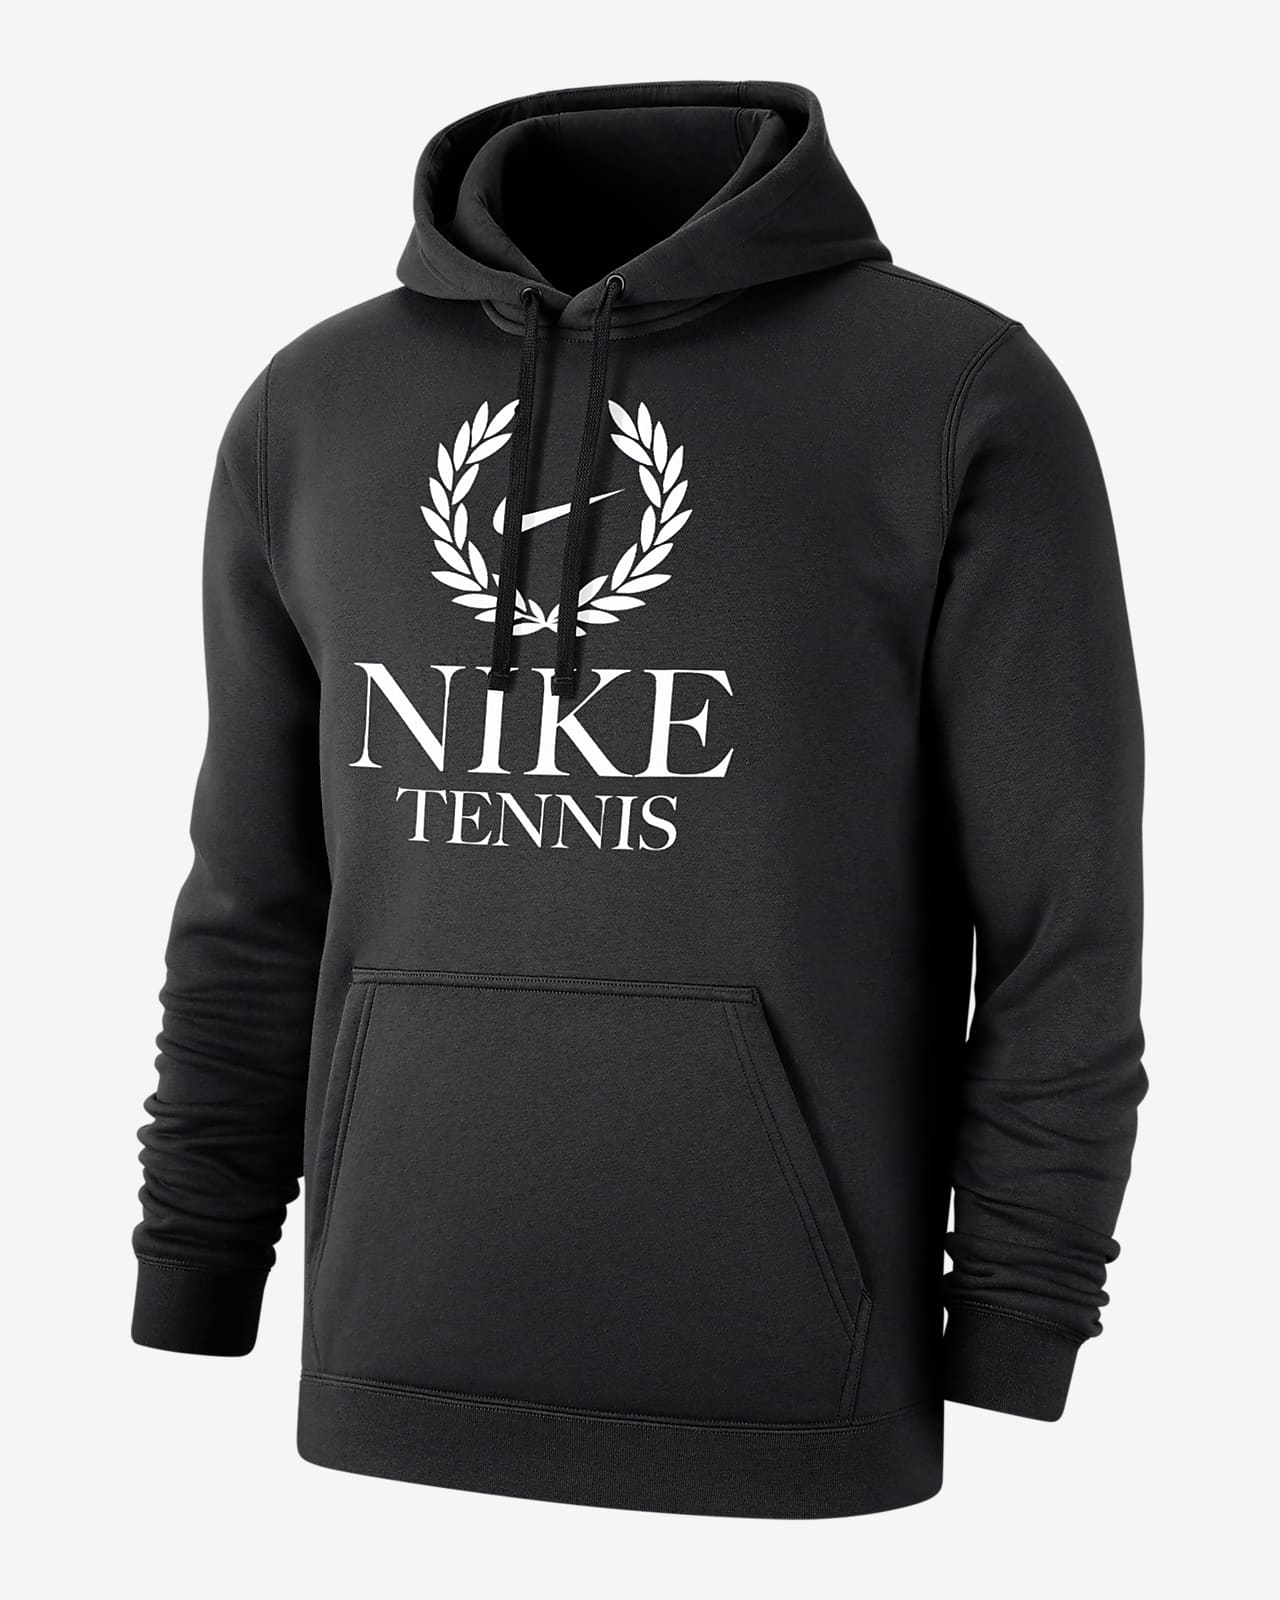 Nike Tennis Club Fleece Men's Pullover Hoodie